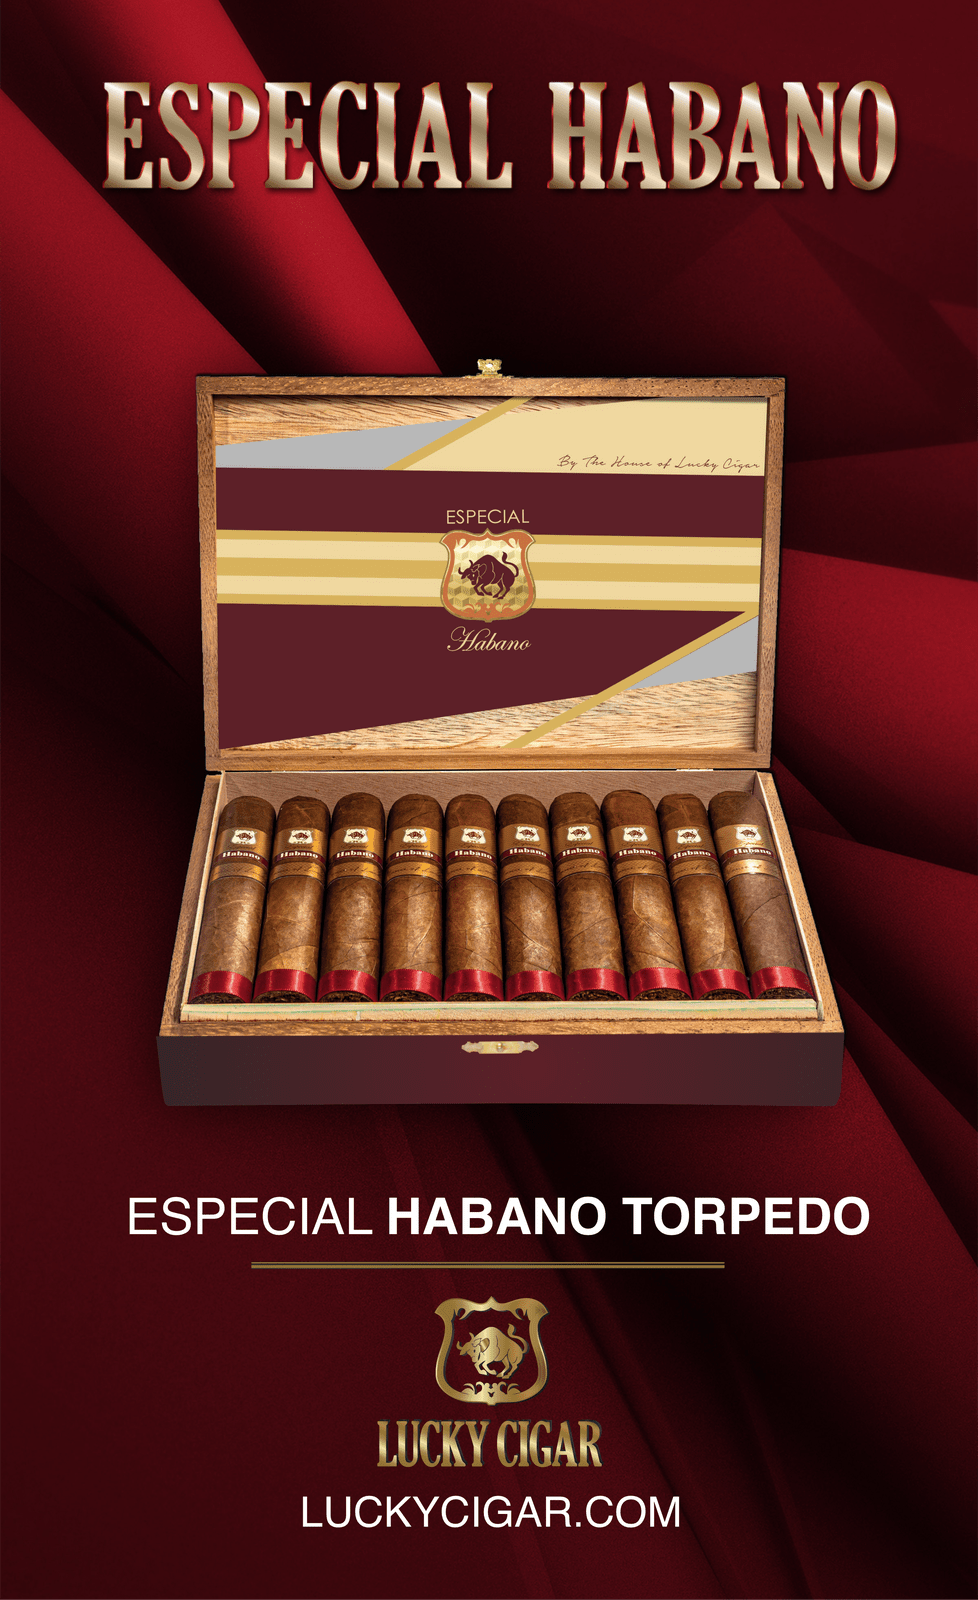 Habano Cigars: Especial Habano by Lucky Cigar: Torpedo 6x52 Box of 20